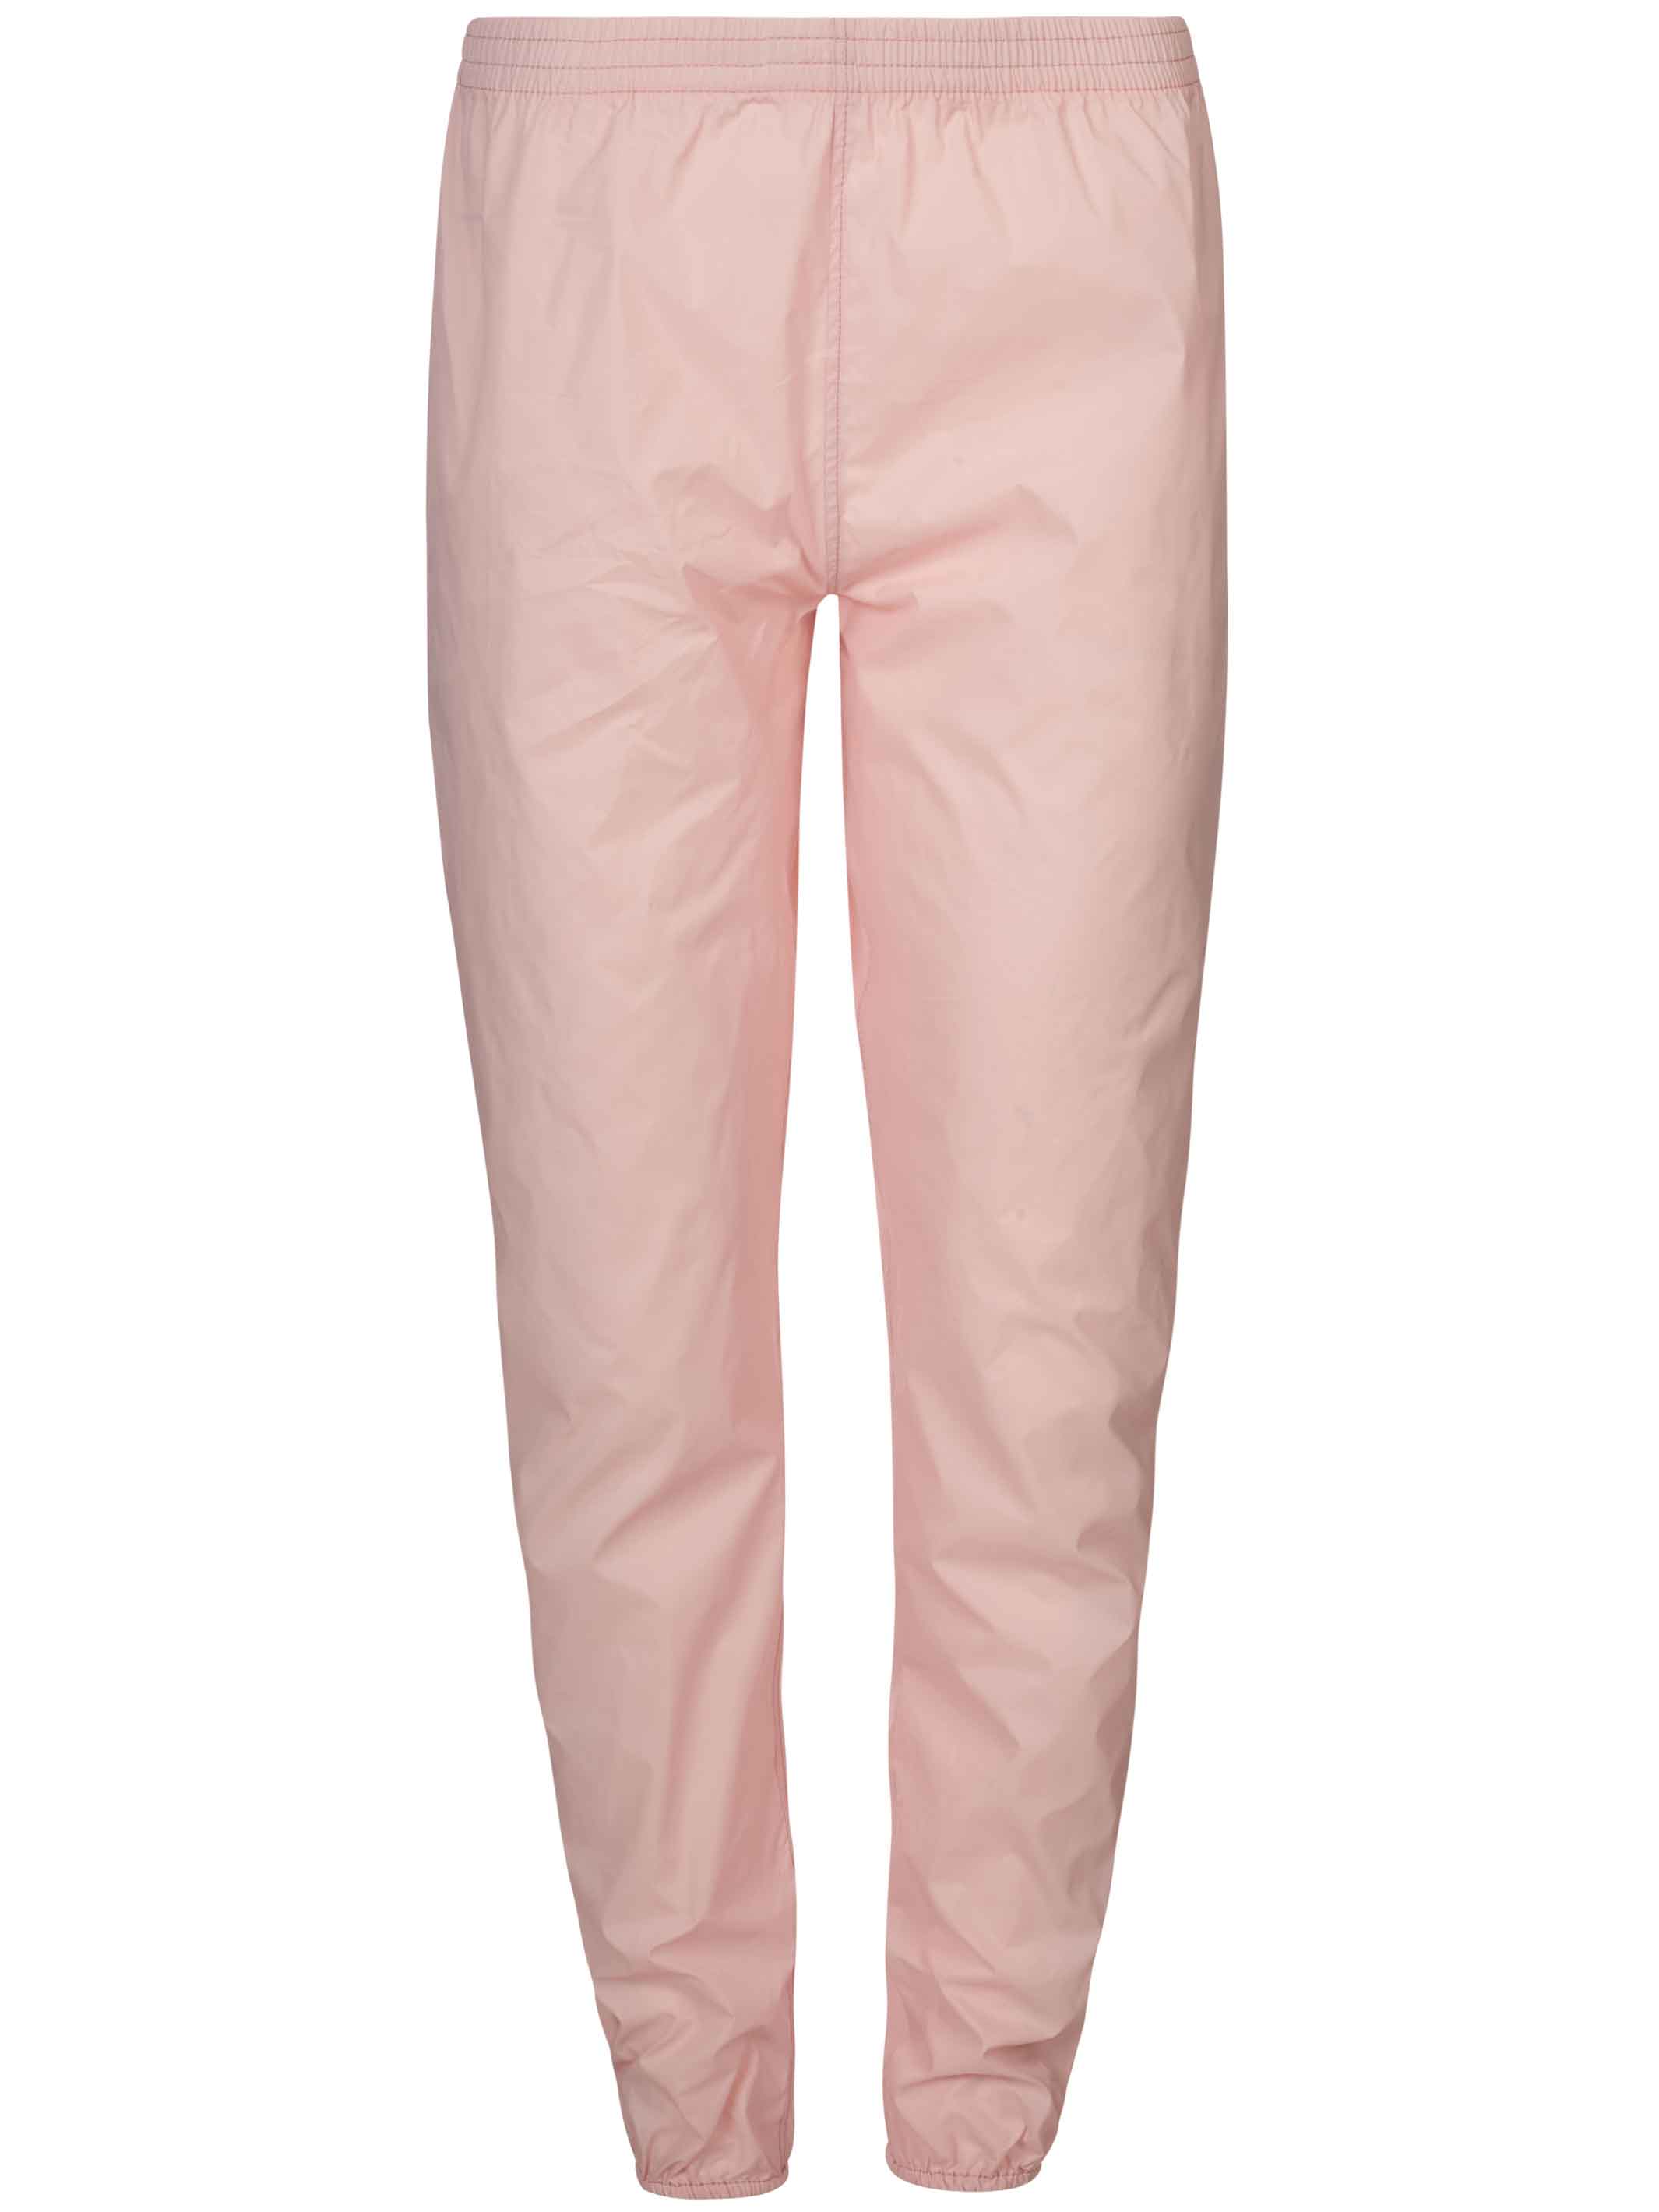 Pastel Pink Warm-up pants